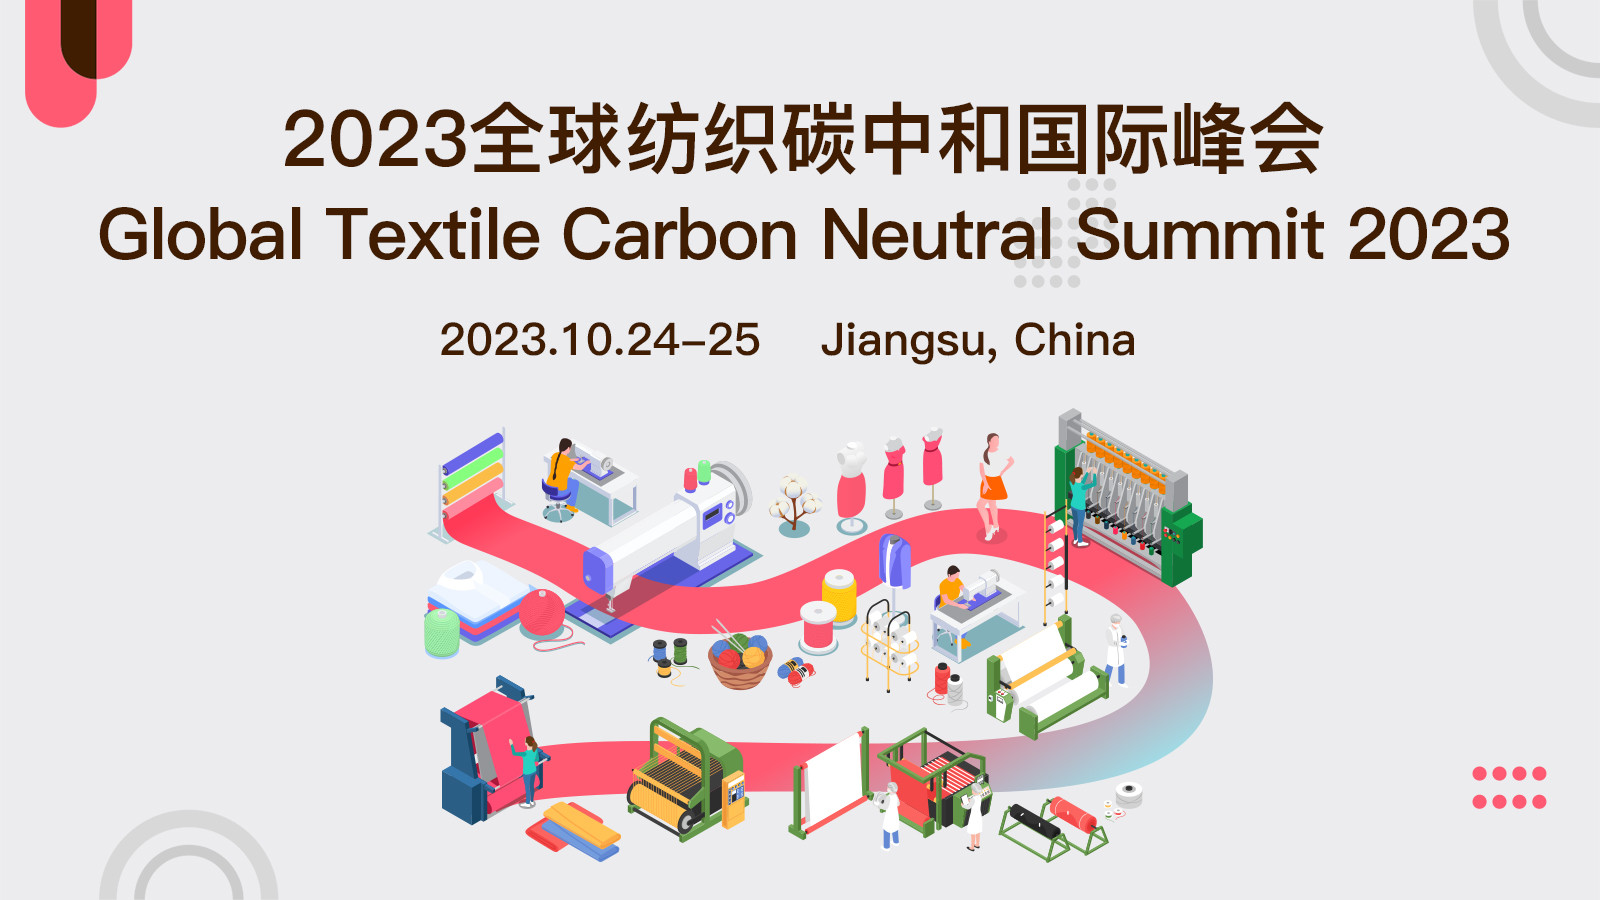 2023全球纺织碳中和国际峰会